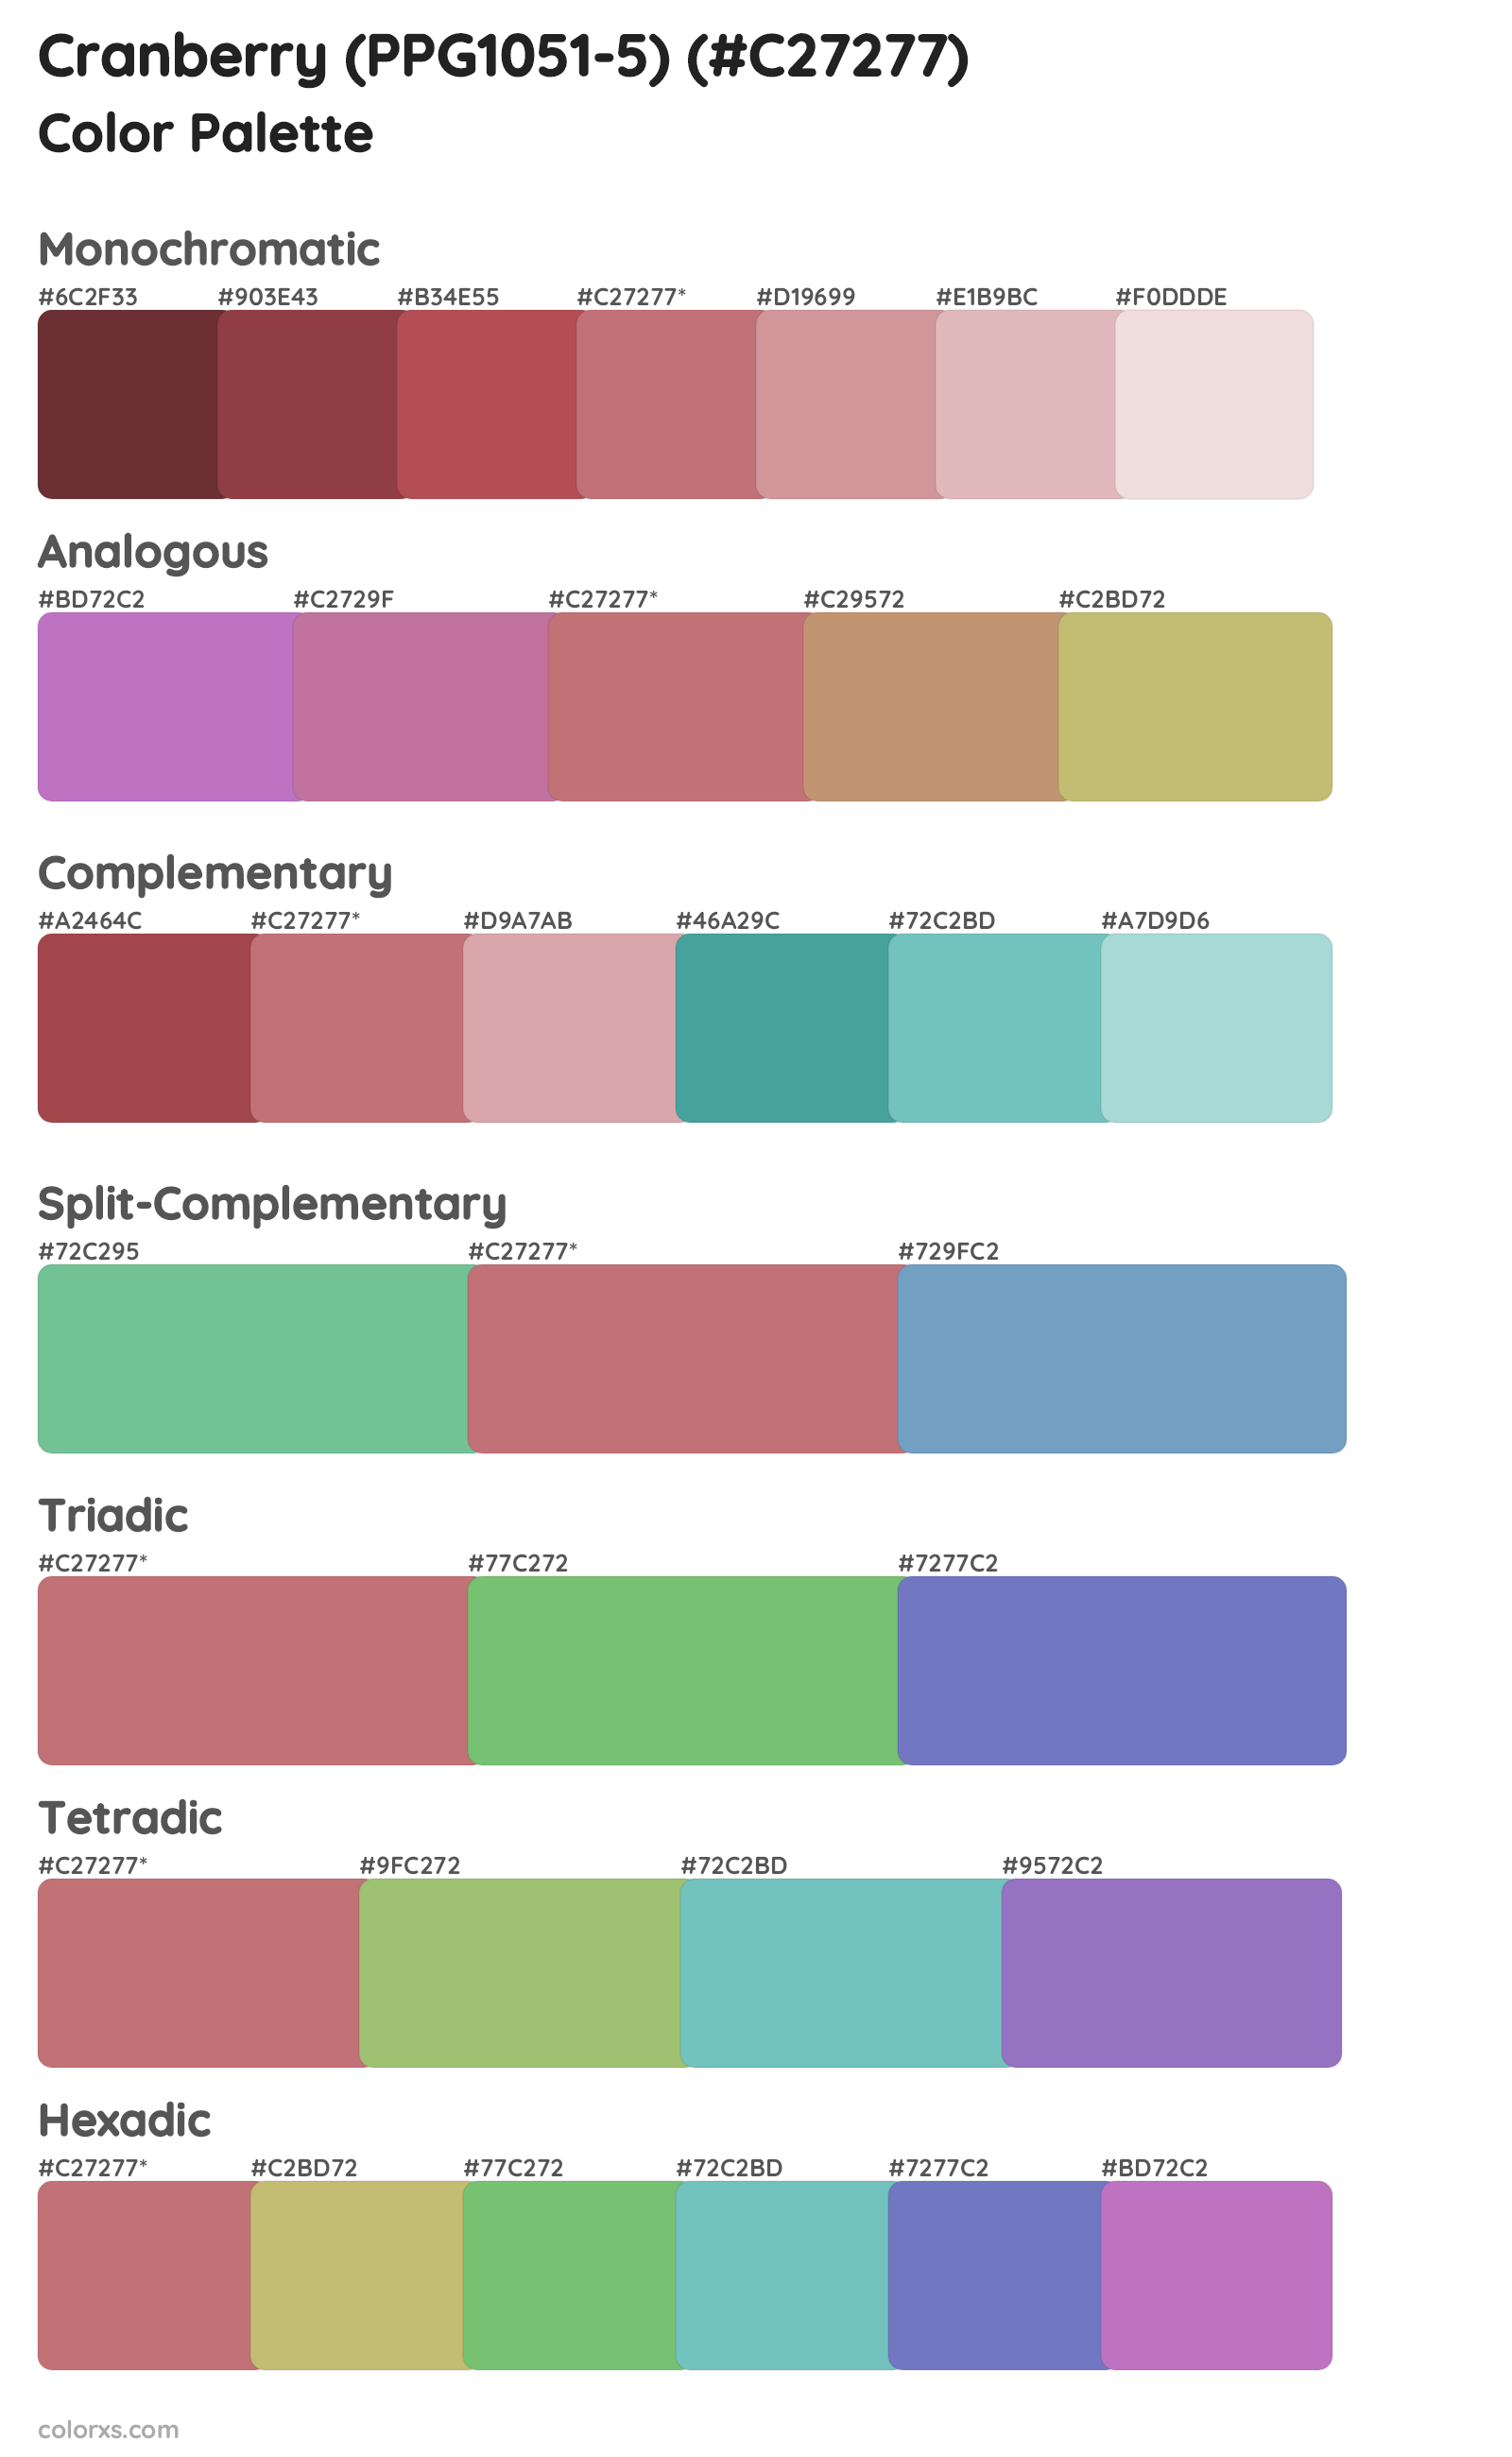 Cranberry (PPG1051-5) Color Scheme Palettes